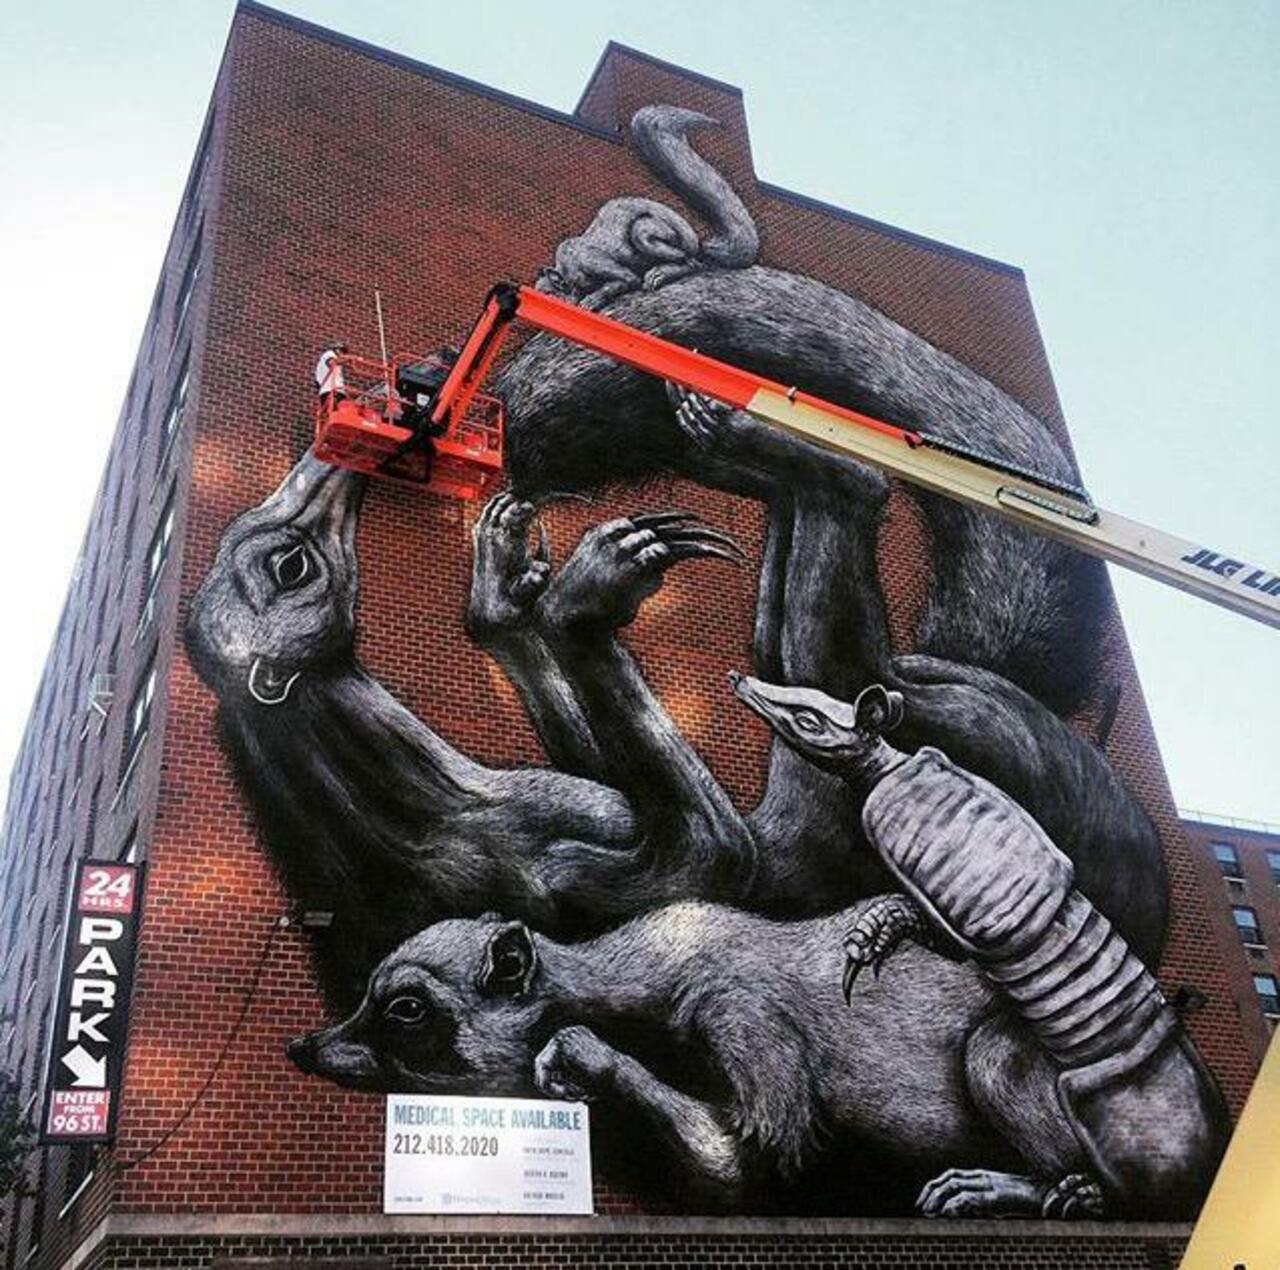 Street Art in progress by ROA in NYC

#art #graffiti #mural #streetart http://t.co/j0k4dGLsxd